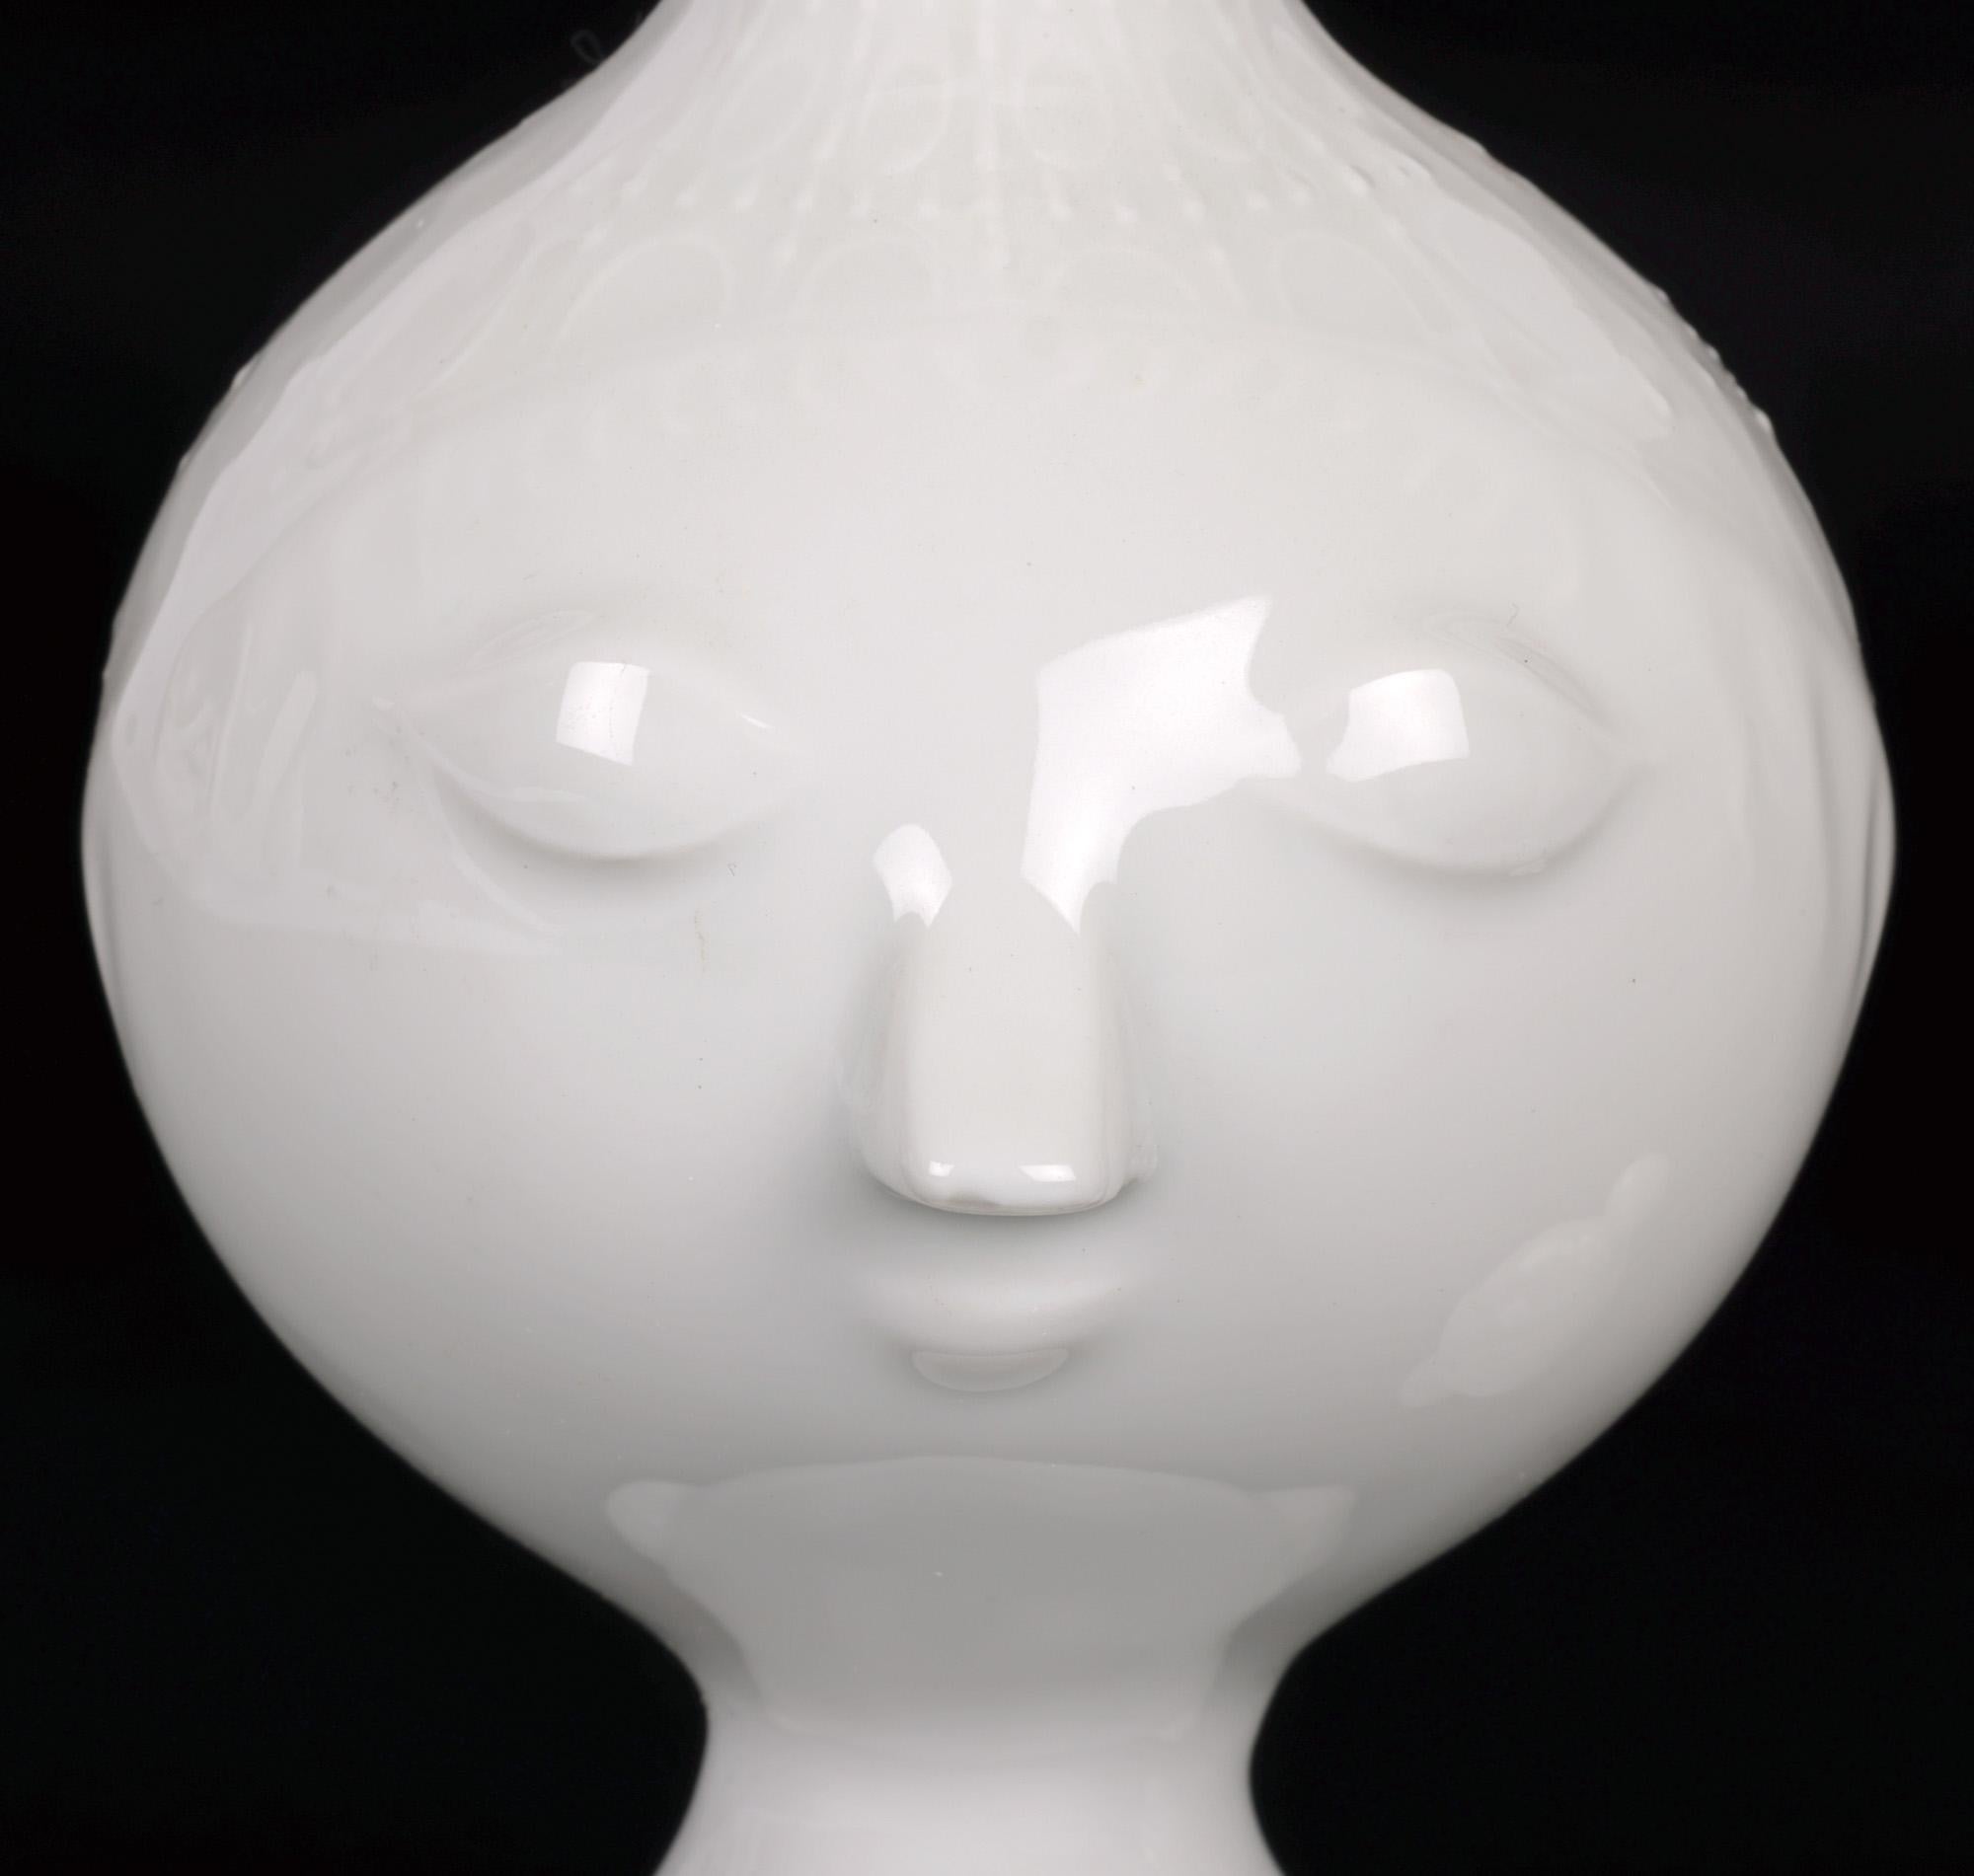 Un exemple très élégant de cette charmante cruche à couvercle en porcelaine de Rosenthal du milieu du siècle dernier, modelée en buste de jeune fille par le célèbre artiste danois Bjorn Wiinblad (1918-2006). Ce pichet en porcelaine blanche finement